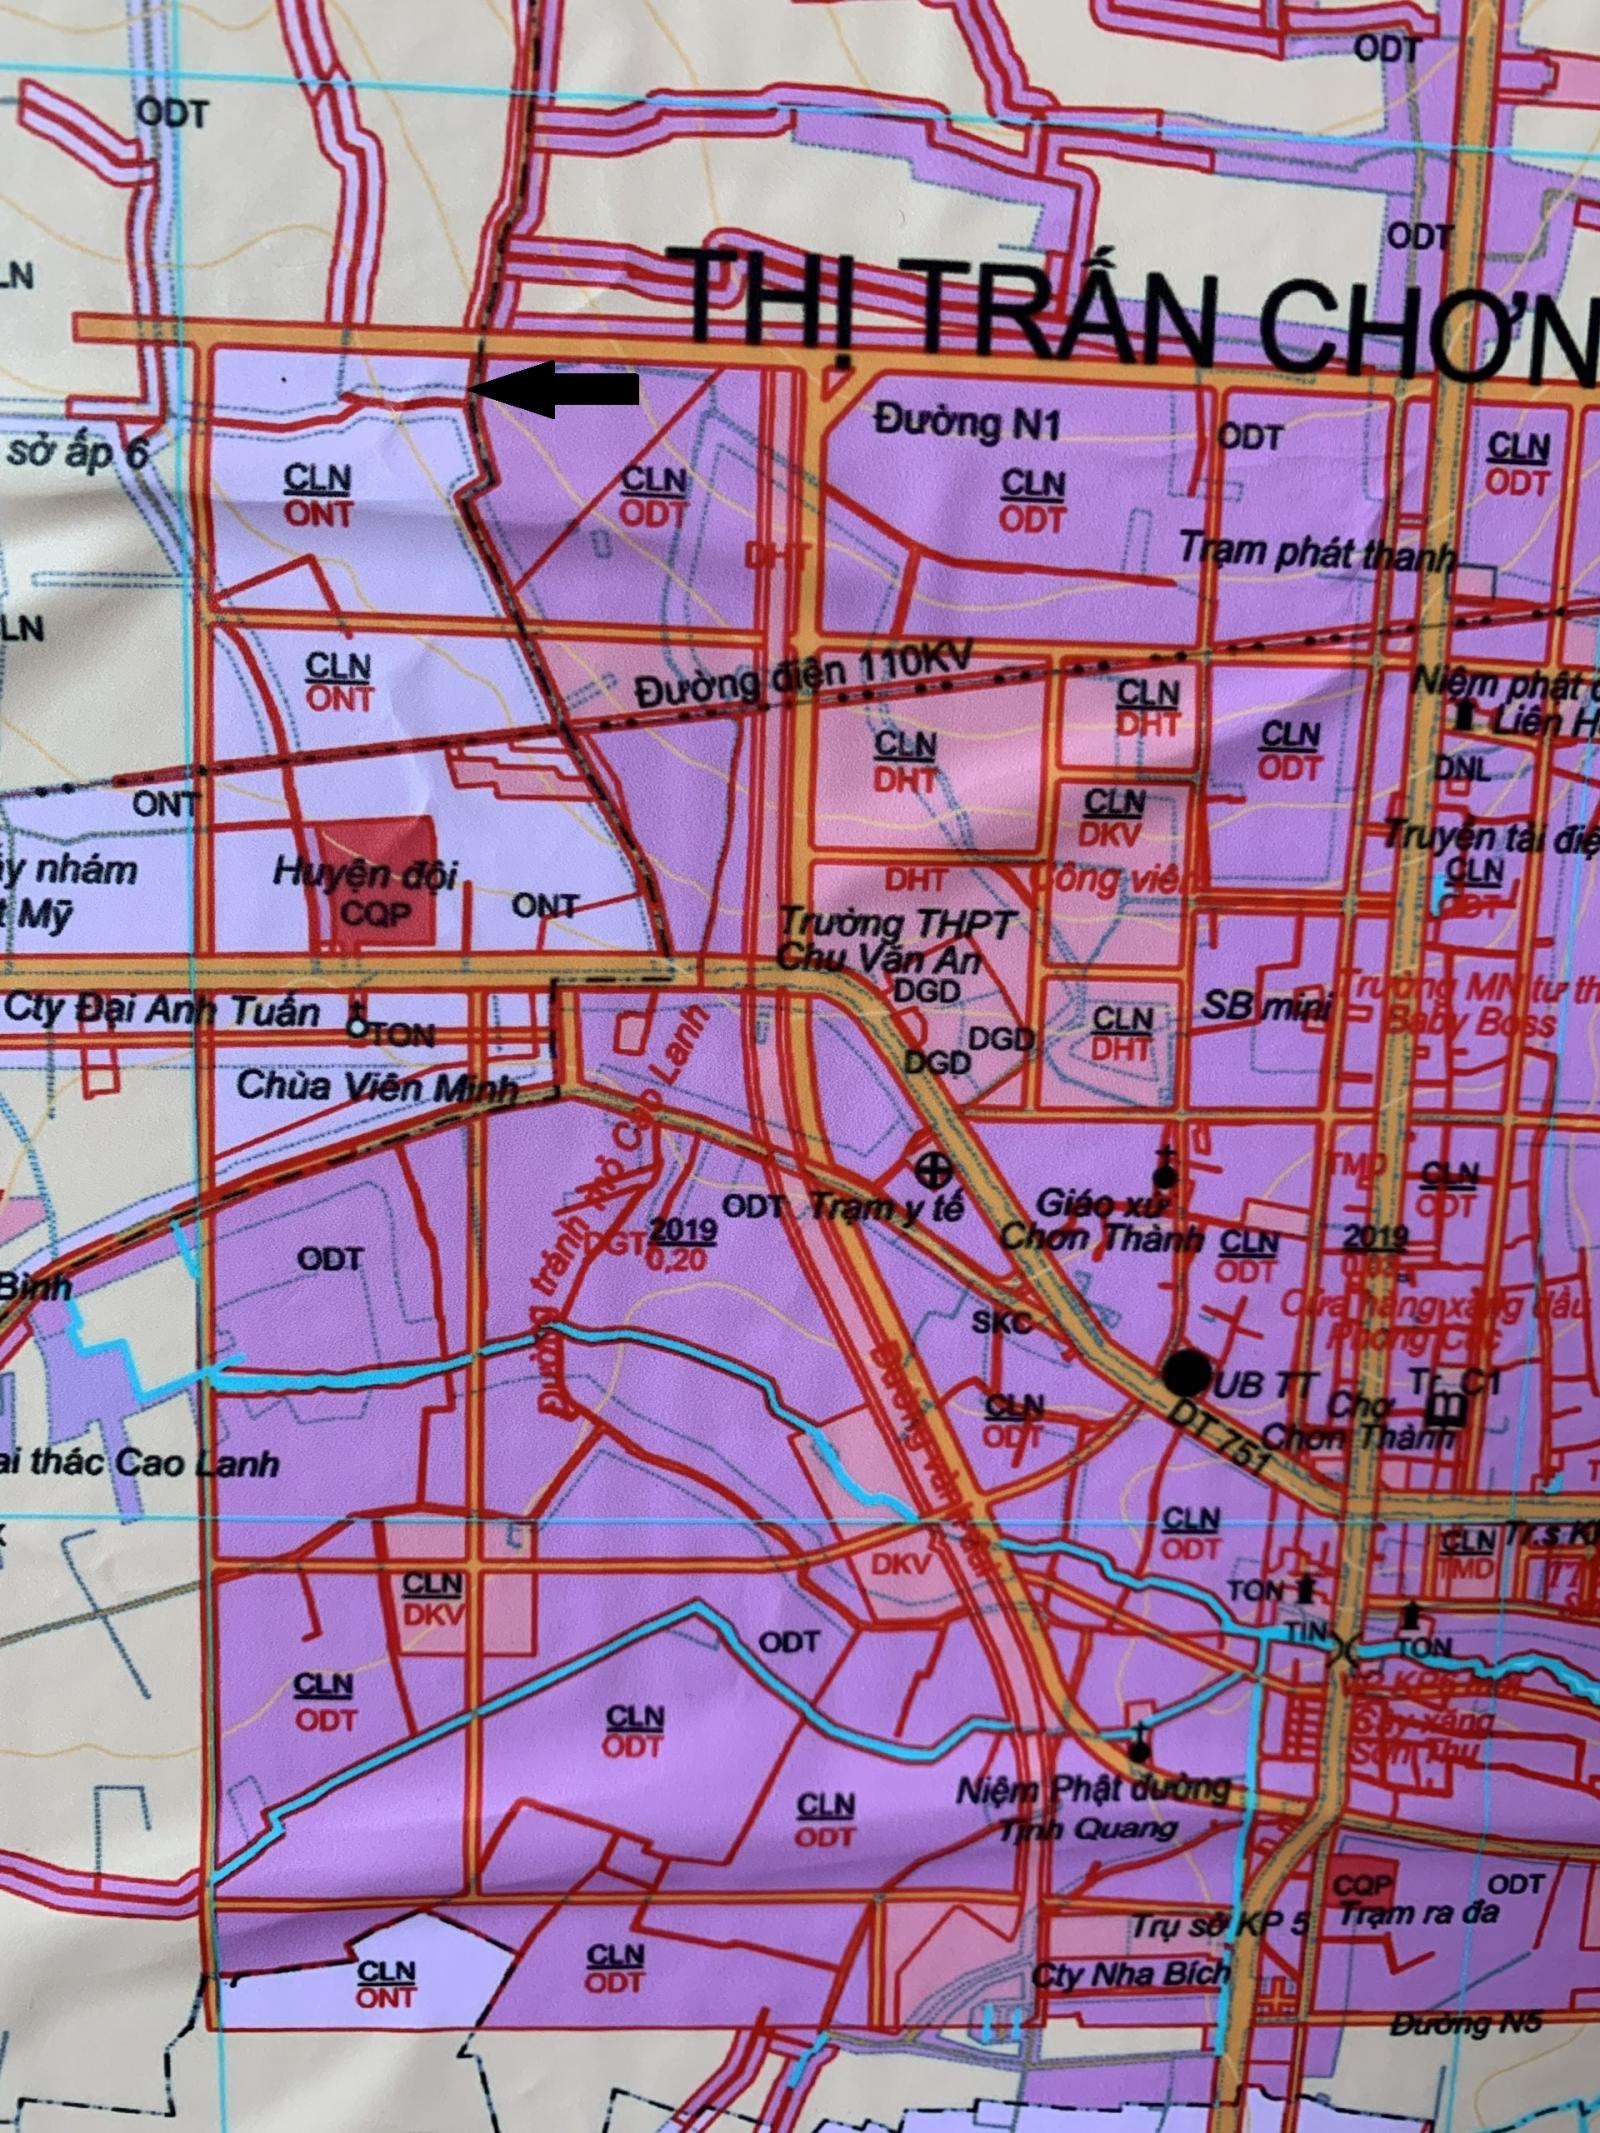 Bán lô đất trung tâm thị trấn Chơn Thành - Bình Phước, đường Ngô Đức Kế, giá 600 triệu.